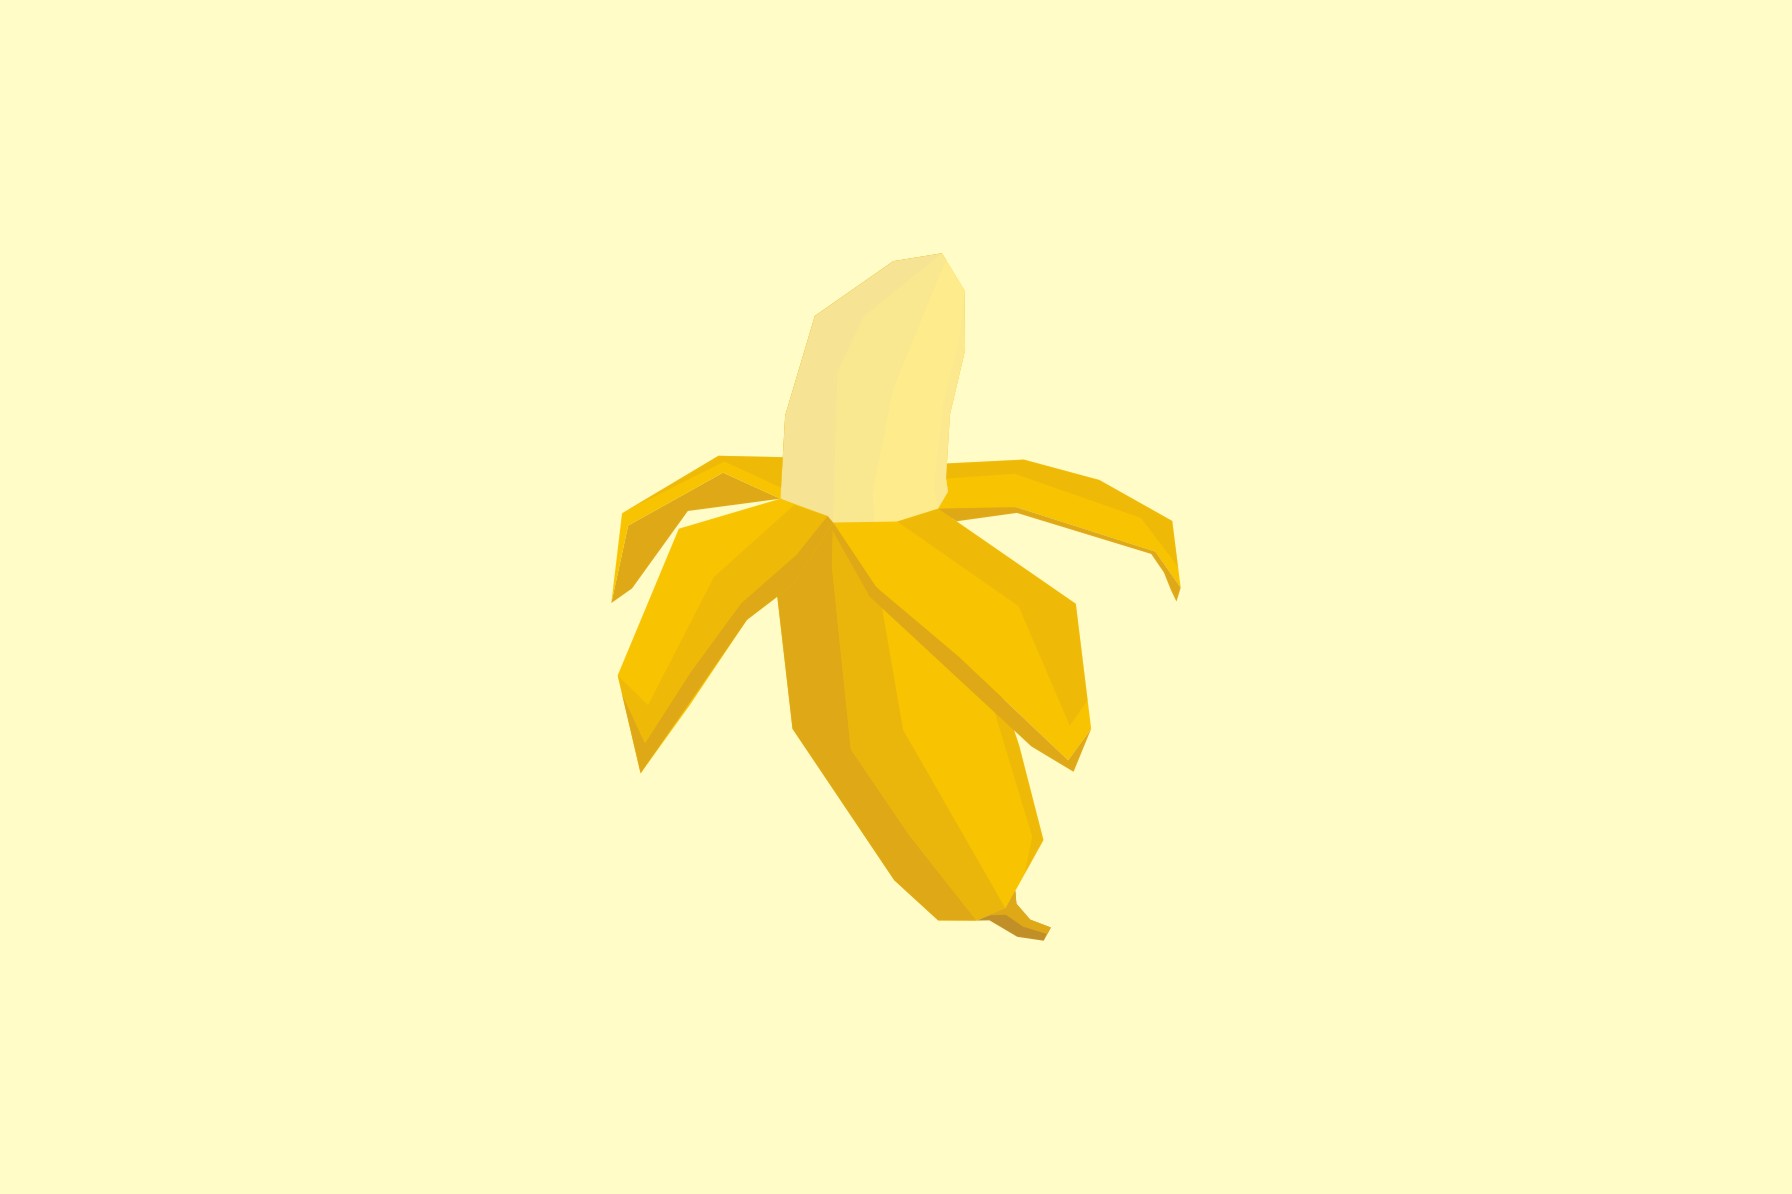 Mahasiswa UMY jadikan kulit pisang sebagai obat diabetes